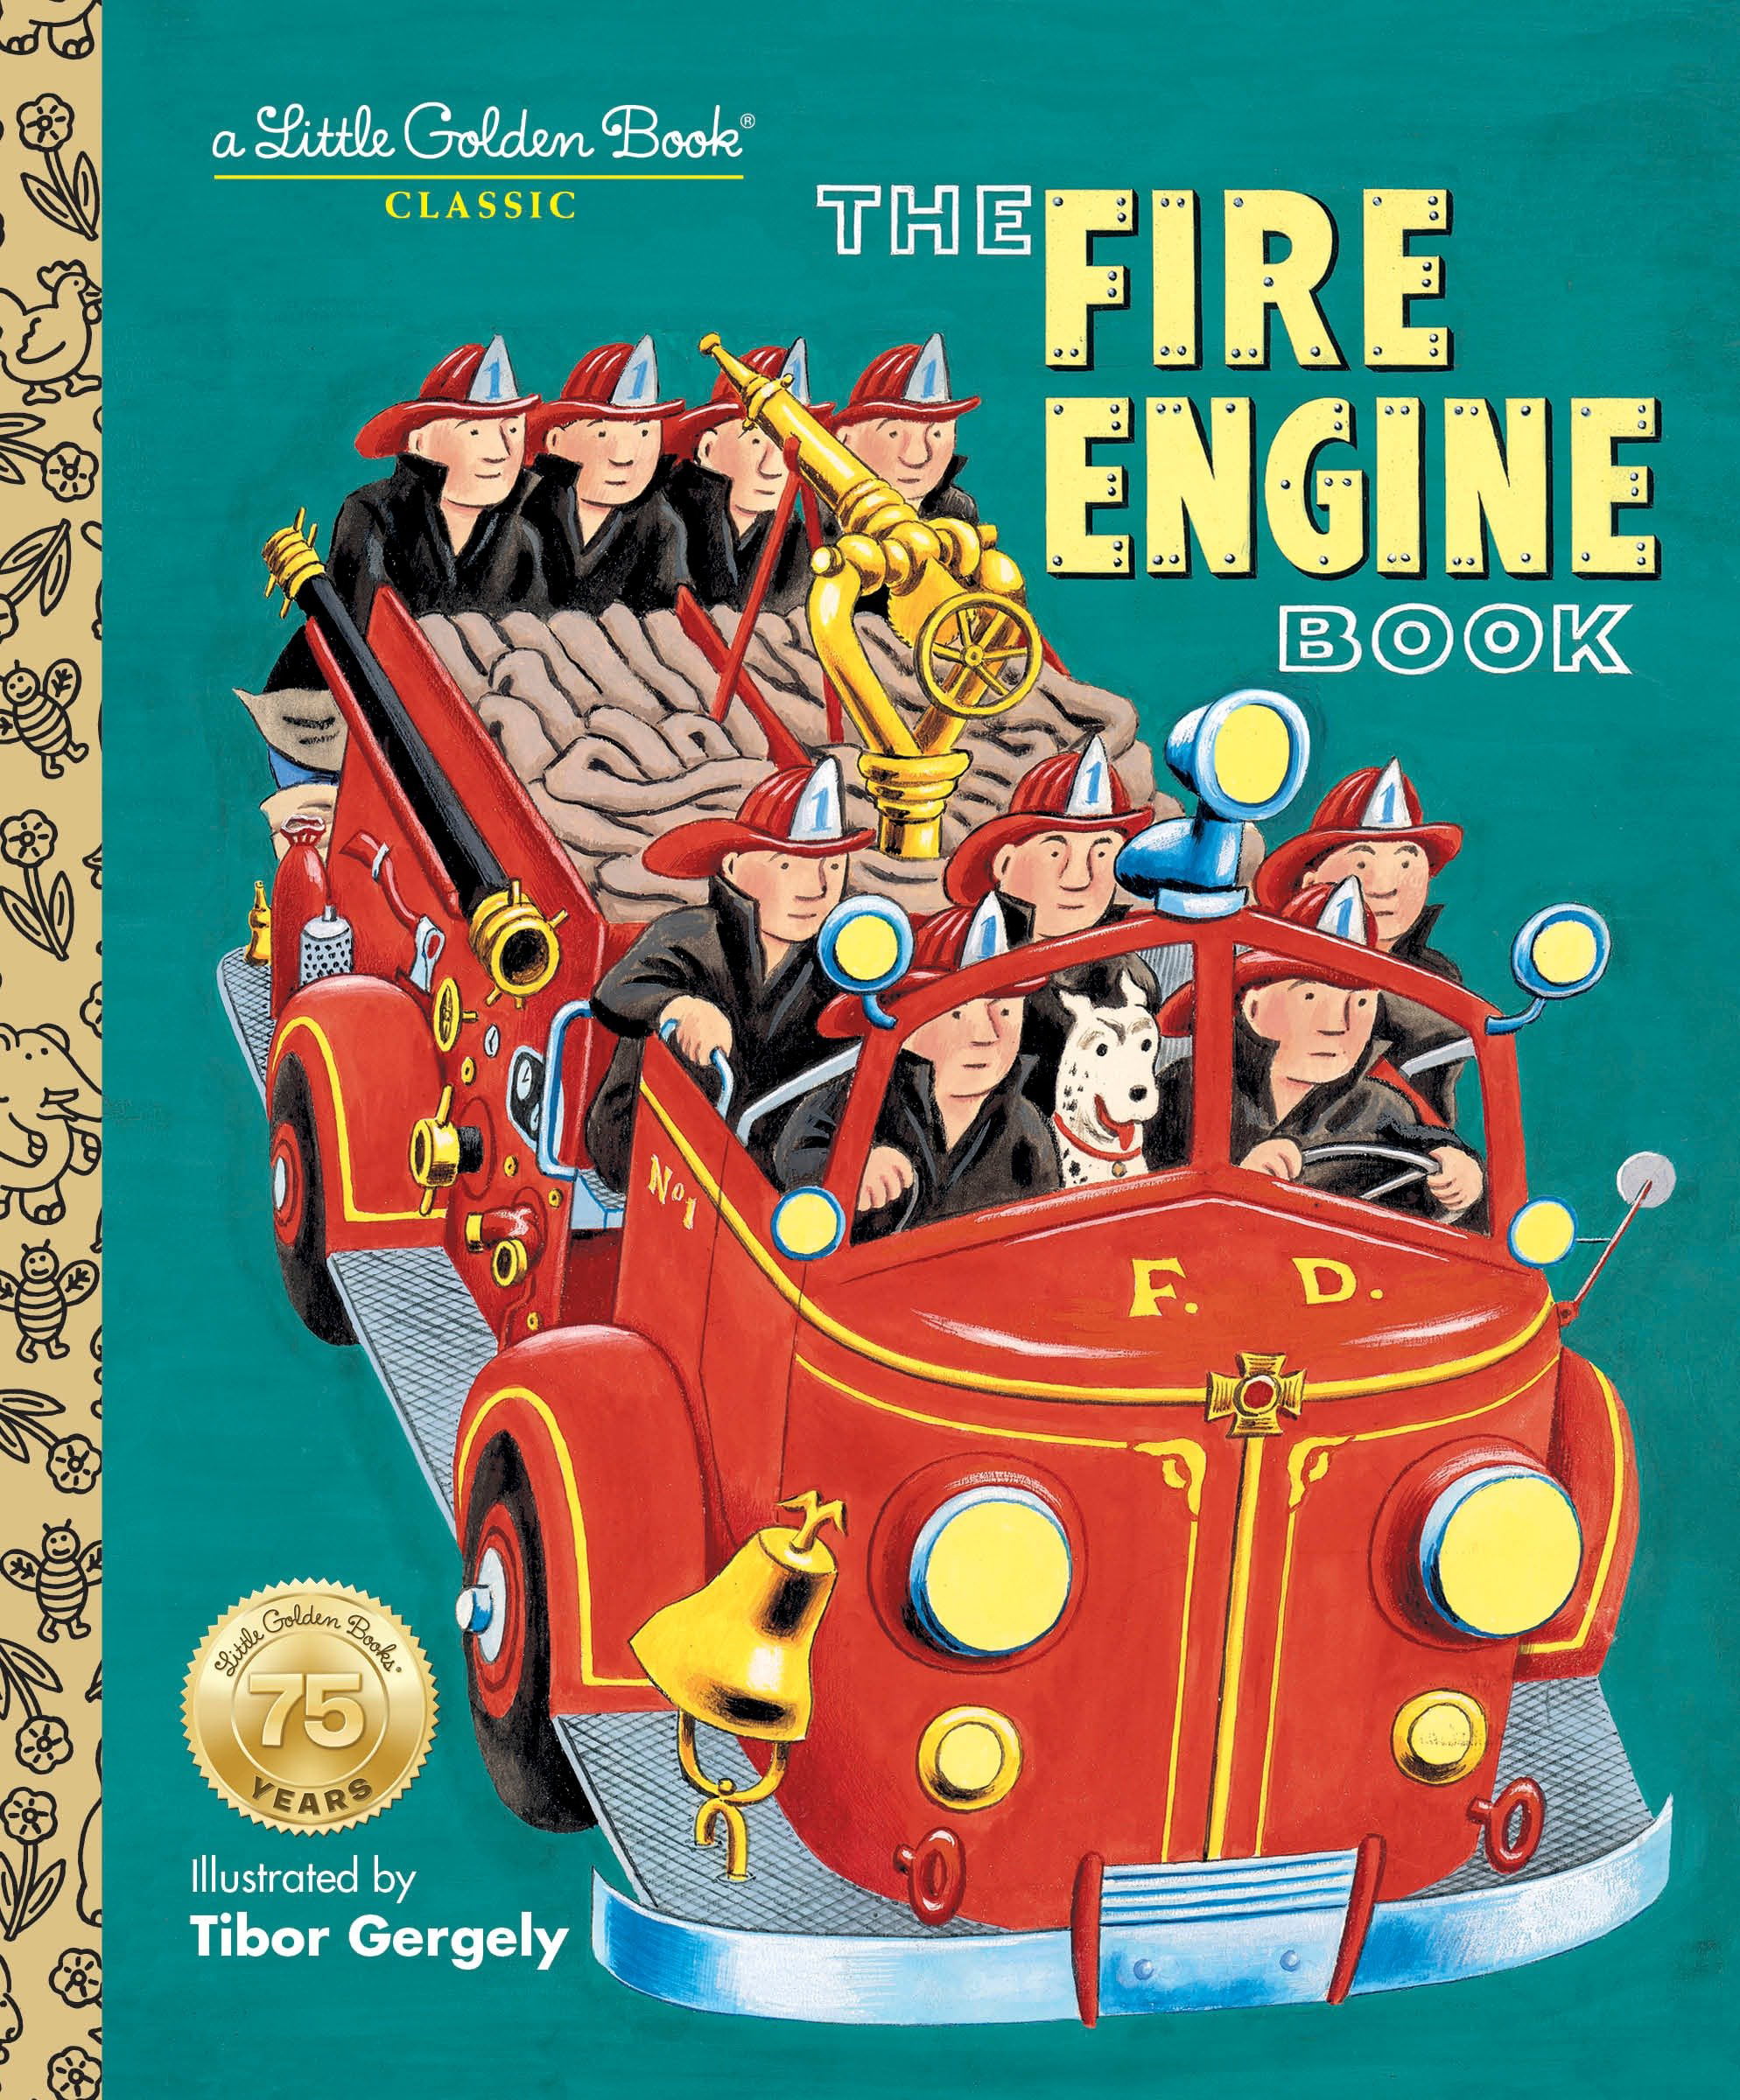 The Fire  Engine  Book  Walmart com Walmart com